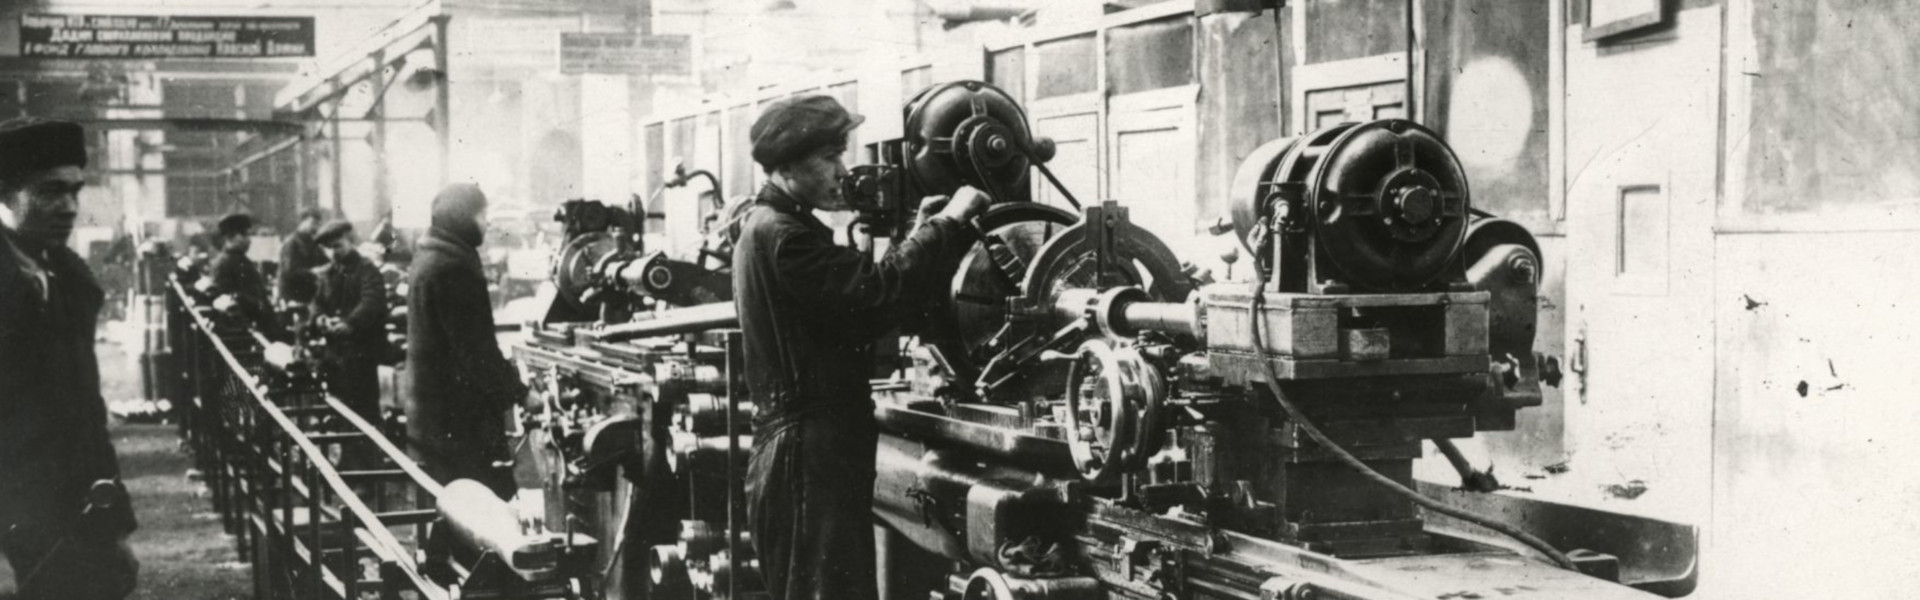 На иркутском авиационном заводе. Фото из фонда музея ИАЗ